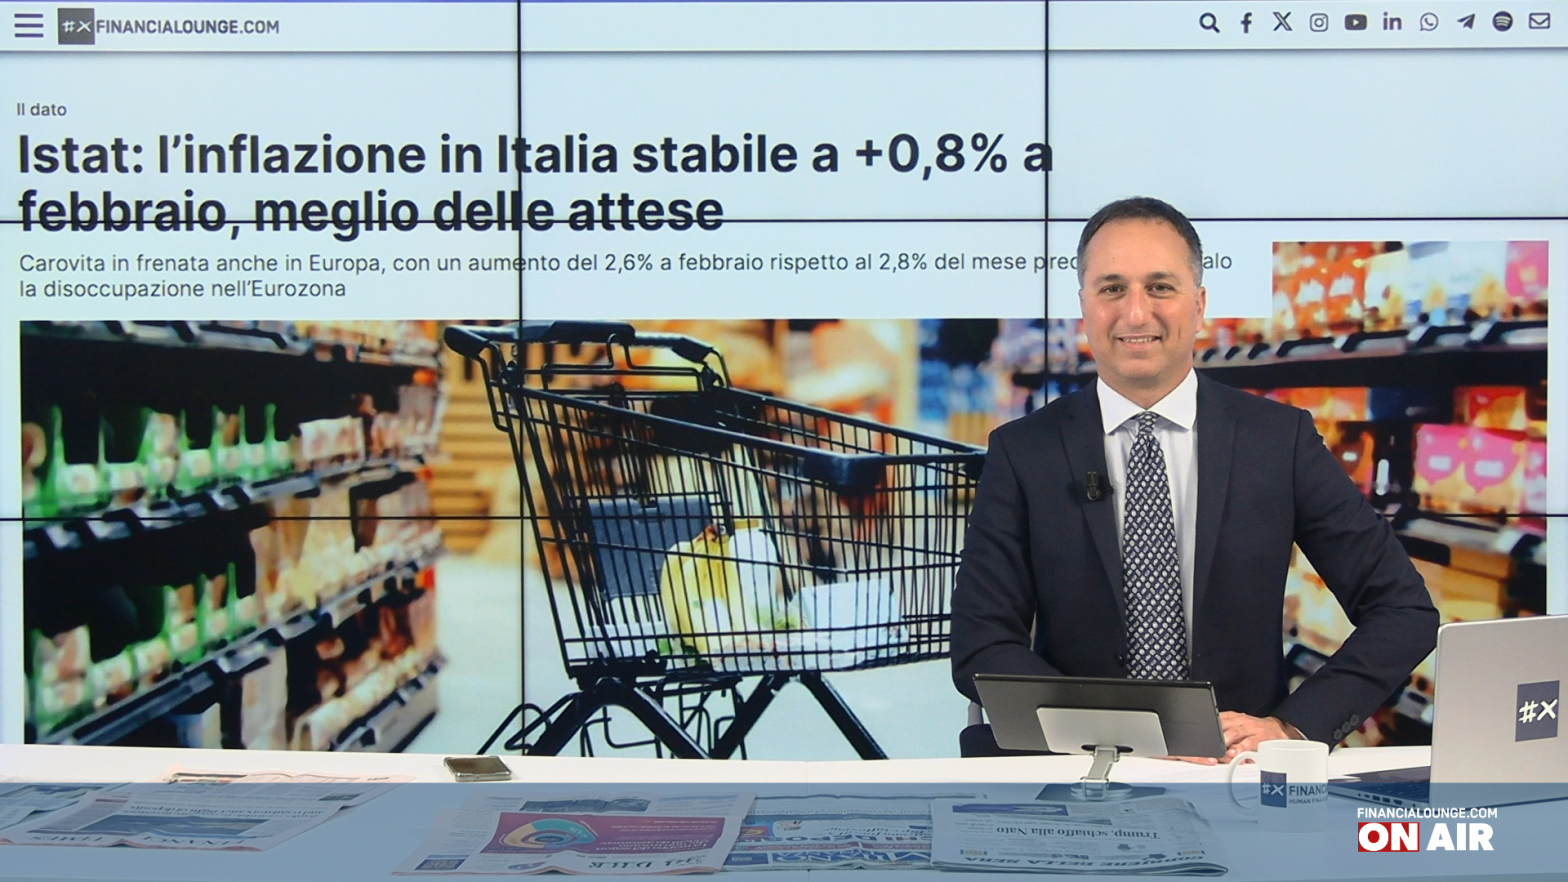 financialounge.com Inflazione stabile in Italia, Piazza Affari da record con focus su Leonardo - Edizione del 1° marzo